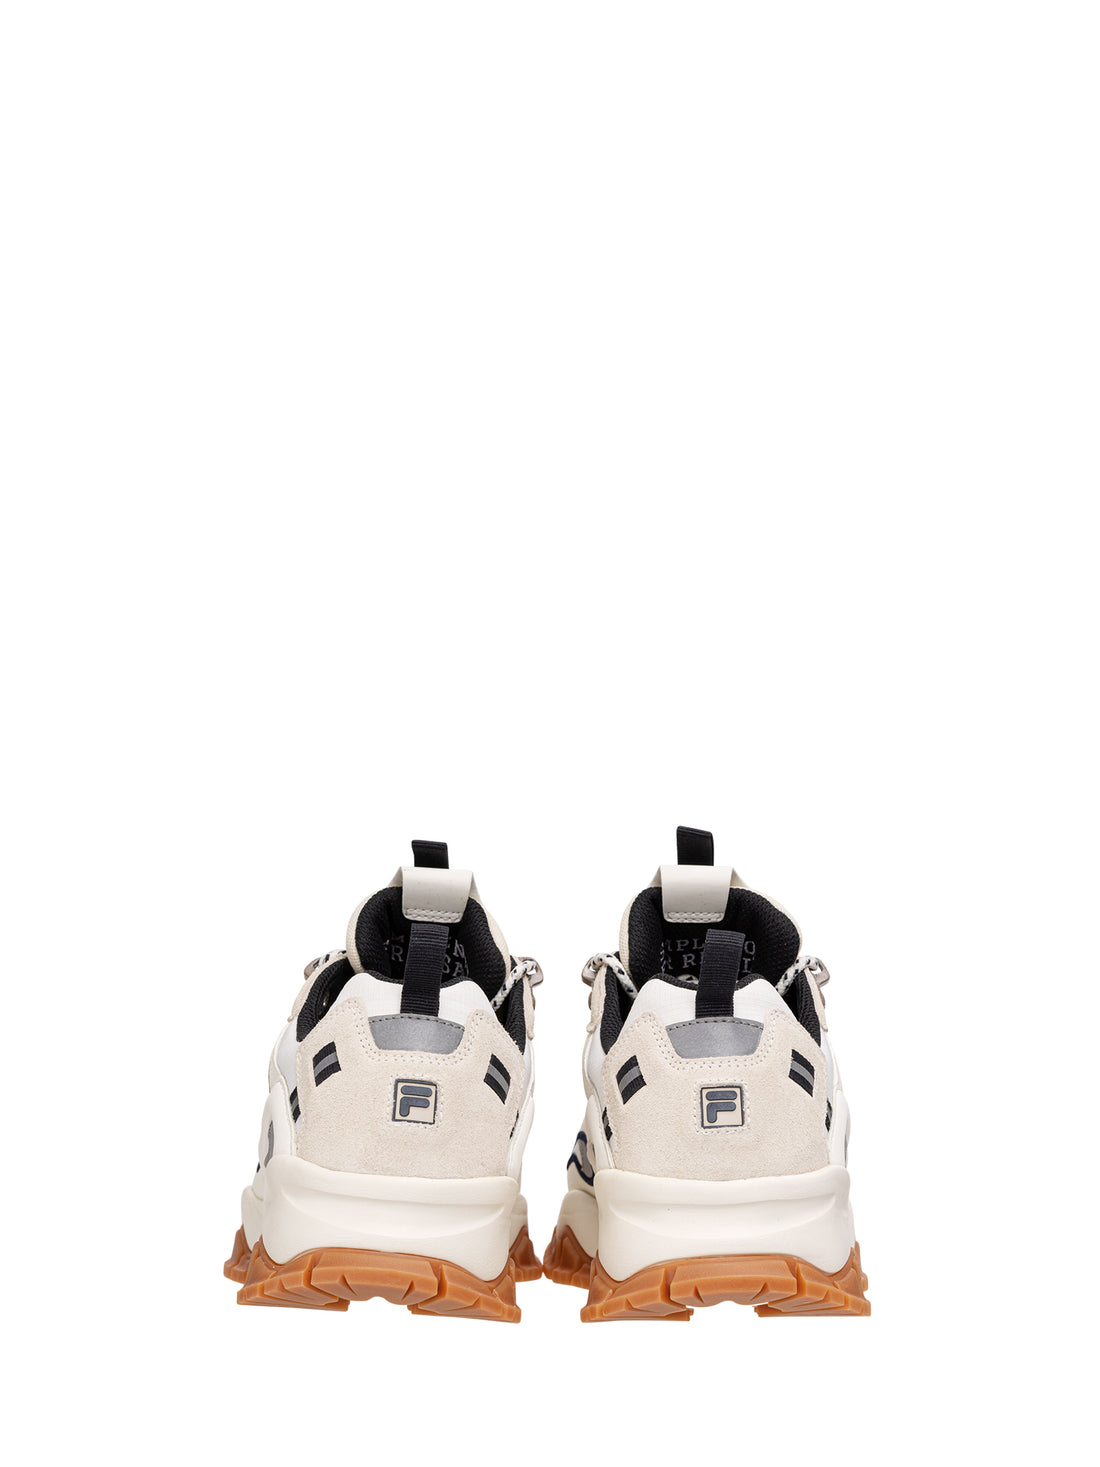 Sneakers Bianco Fila